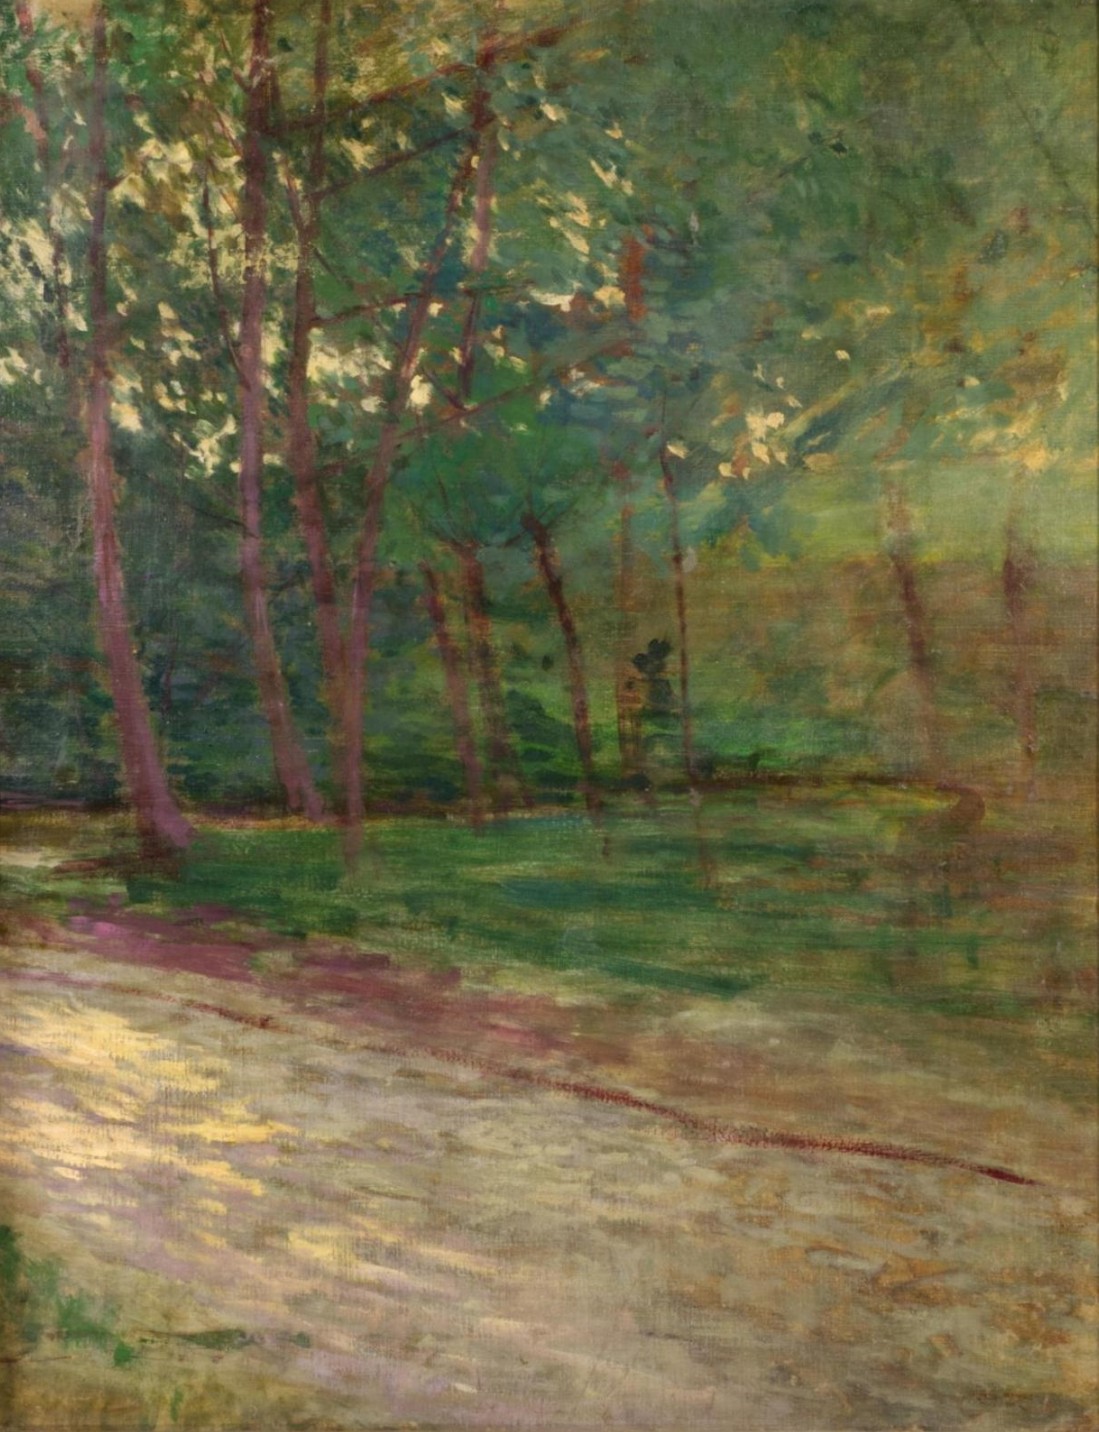 Antonín Slavíček: Cesta v parku, 1897–1900, olej na plátně, 84 x 65,5 cm, Aukční dům Zezula 10.12.2022,  cena: 4 020 000 Kč